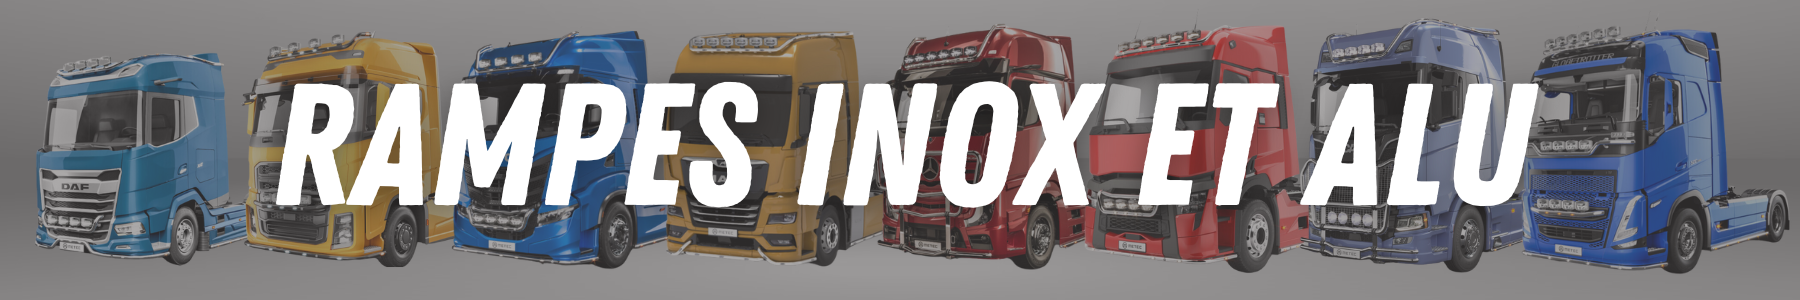 Rampes inox et alu pour chaque modèle de camions